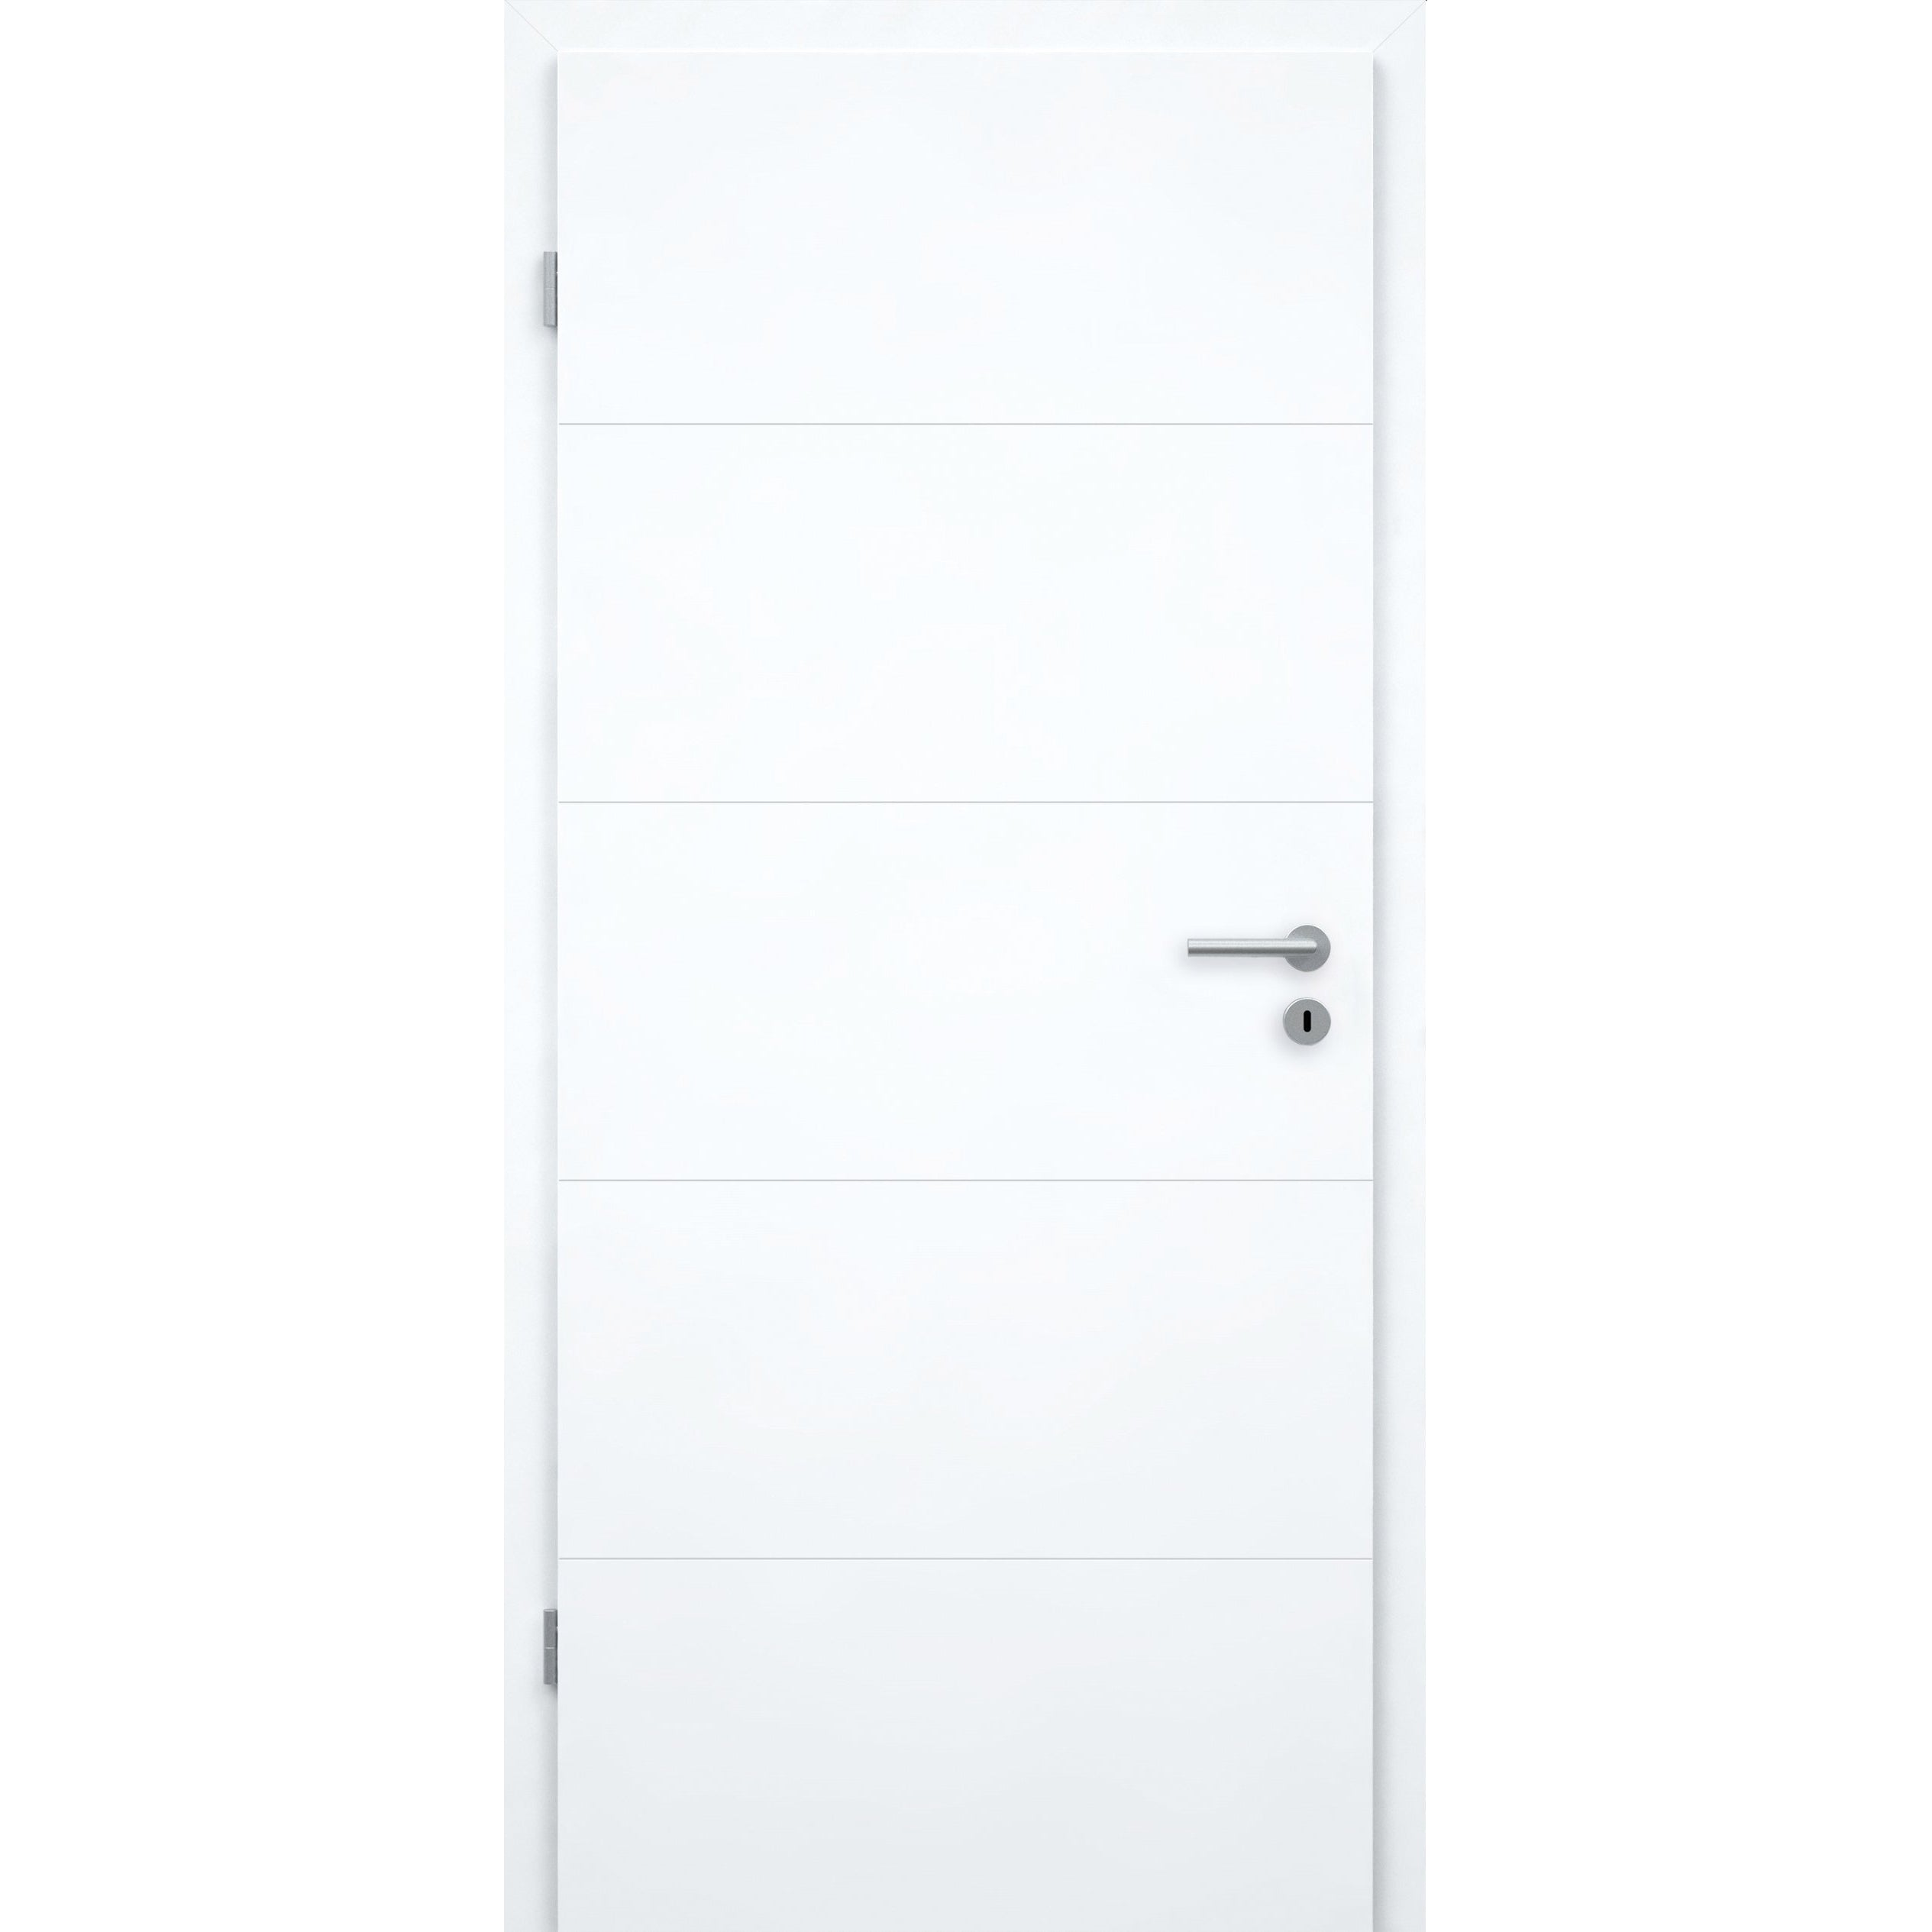 Wohnungseingangstür mit Zarge brillant-weiß 4 Rillen Designkante SK1 / KK3 - Modell Designtür Q43